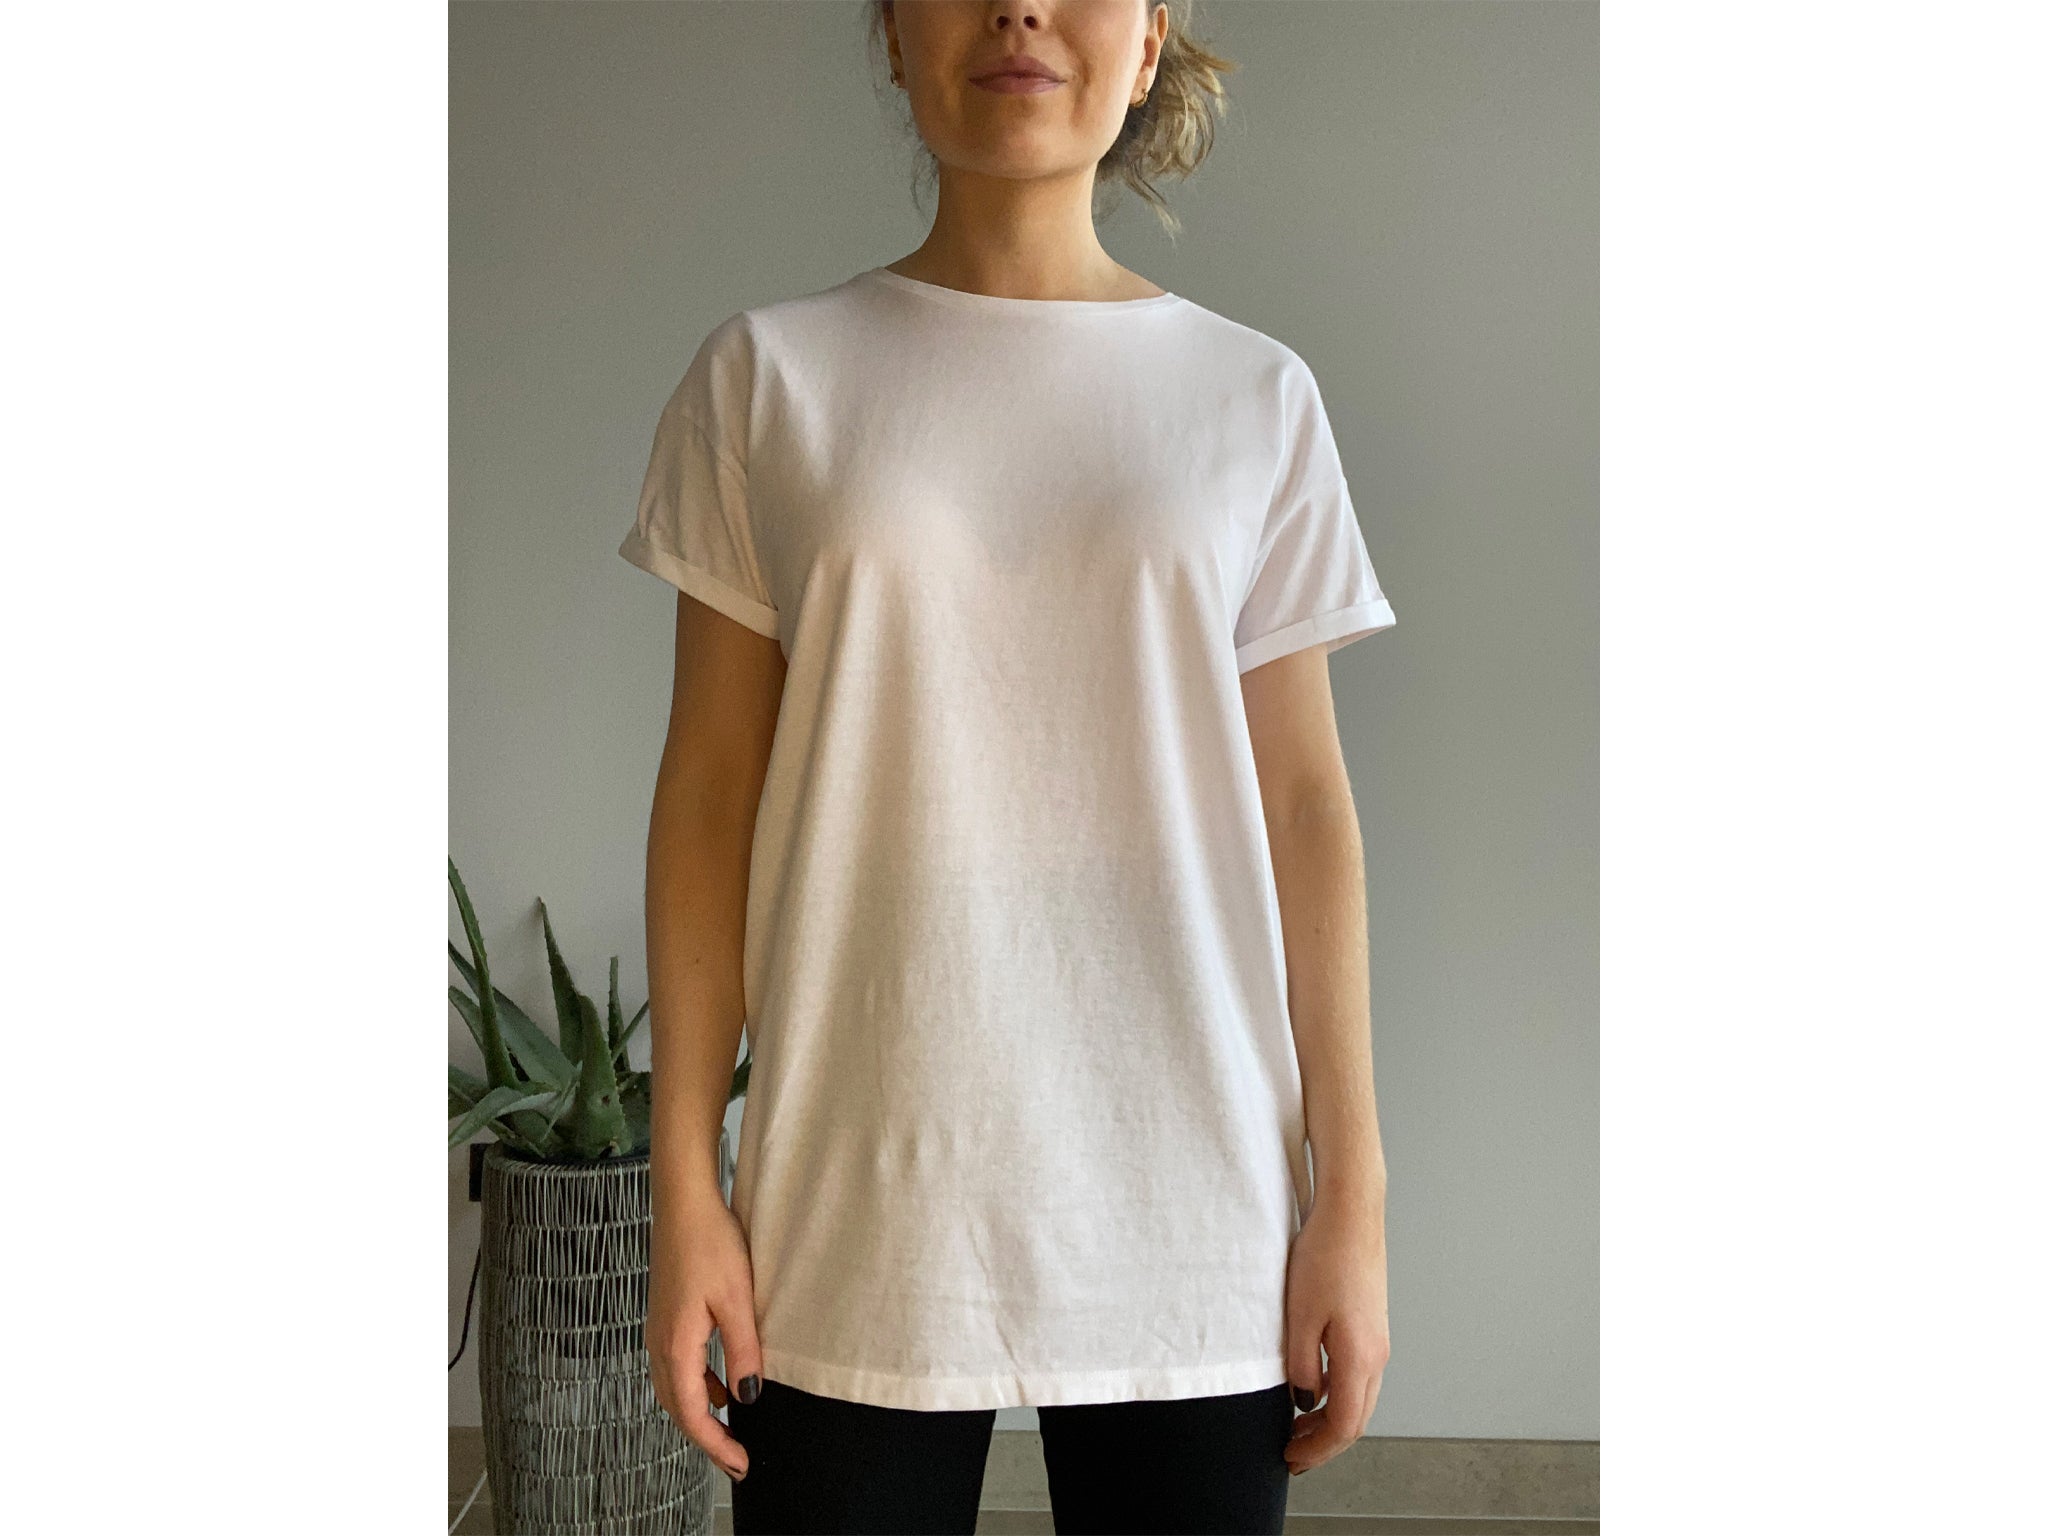 ONLY T-shirt discount 56% White 38                  EU WOMEN FASHION Shirts & T-shirts Combined 